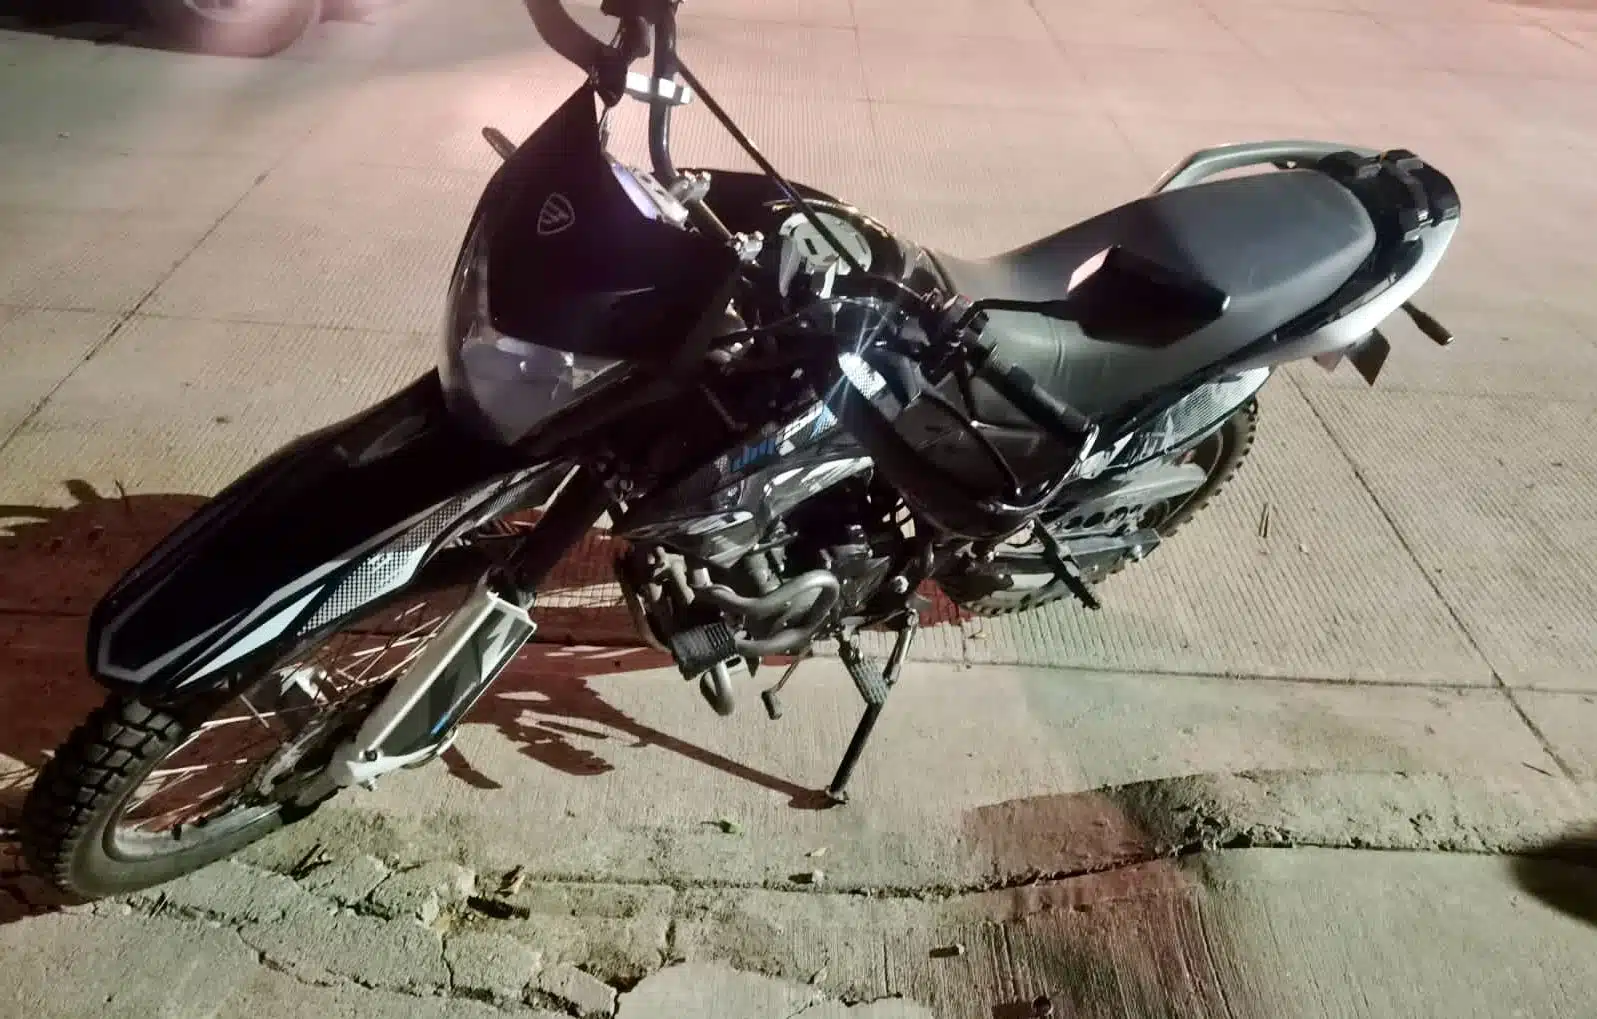 Motocicleta robada en Culiacán